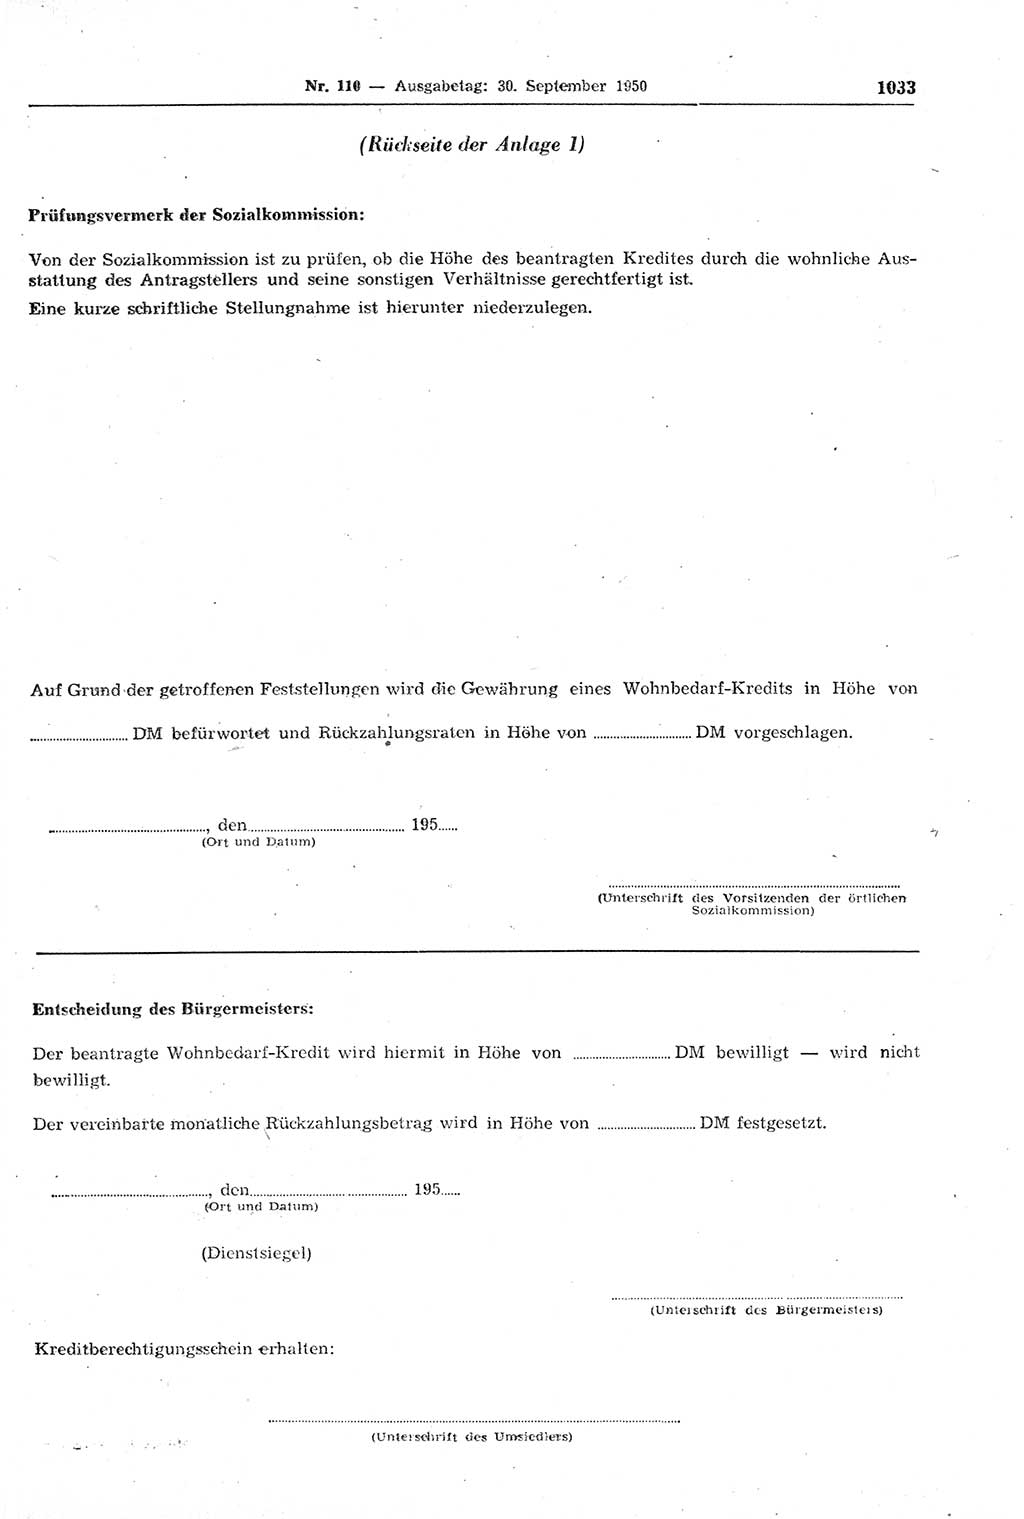 Gesetzblatt (GBl.) der Deutschen Demokratischen Republik (DDR) 1950, Seite 1033 (GBl. DDR 1950, S. 1033)